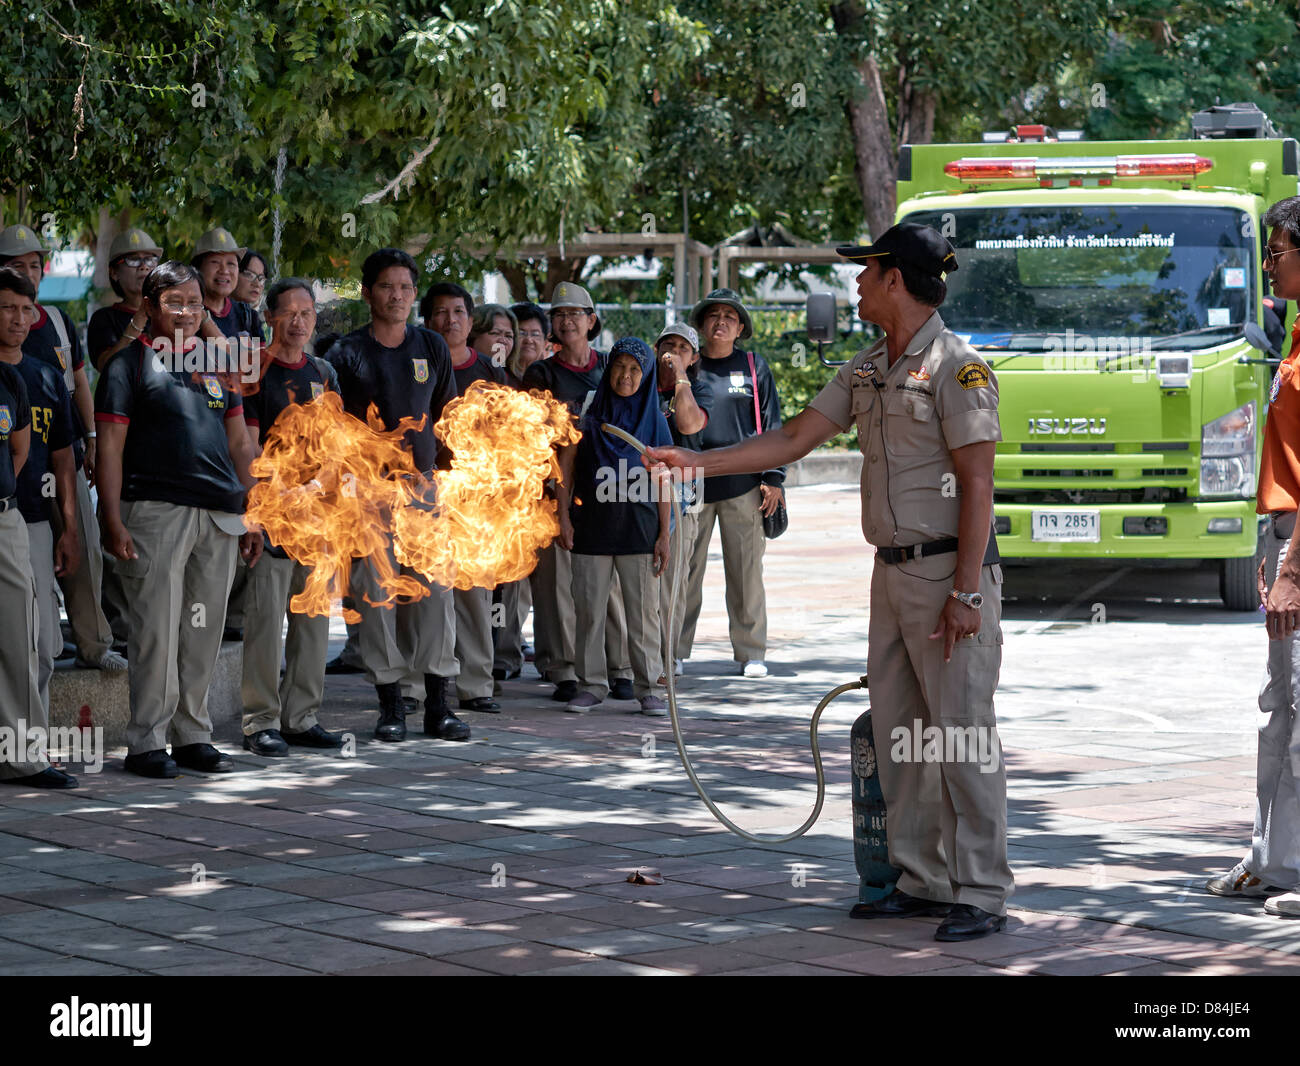 Formation sur la sécurité incendie des appareils domestiques. Un agent d'incendie thaïlandais a démontré le risque potentiel d'incendie d'une bouteille de gaz propane domestique. Banque D'Images